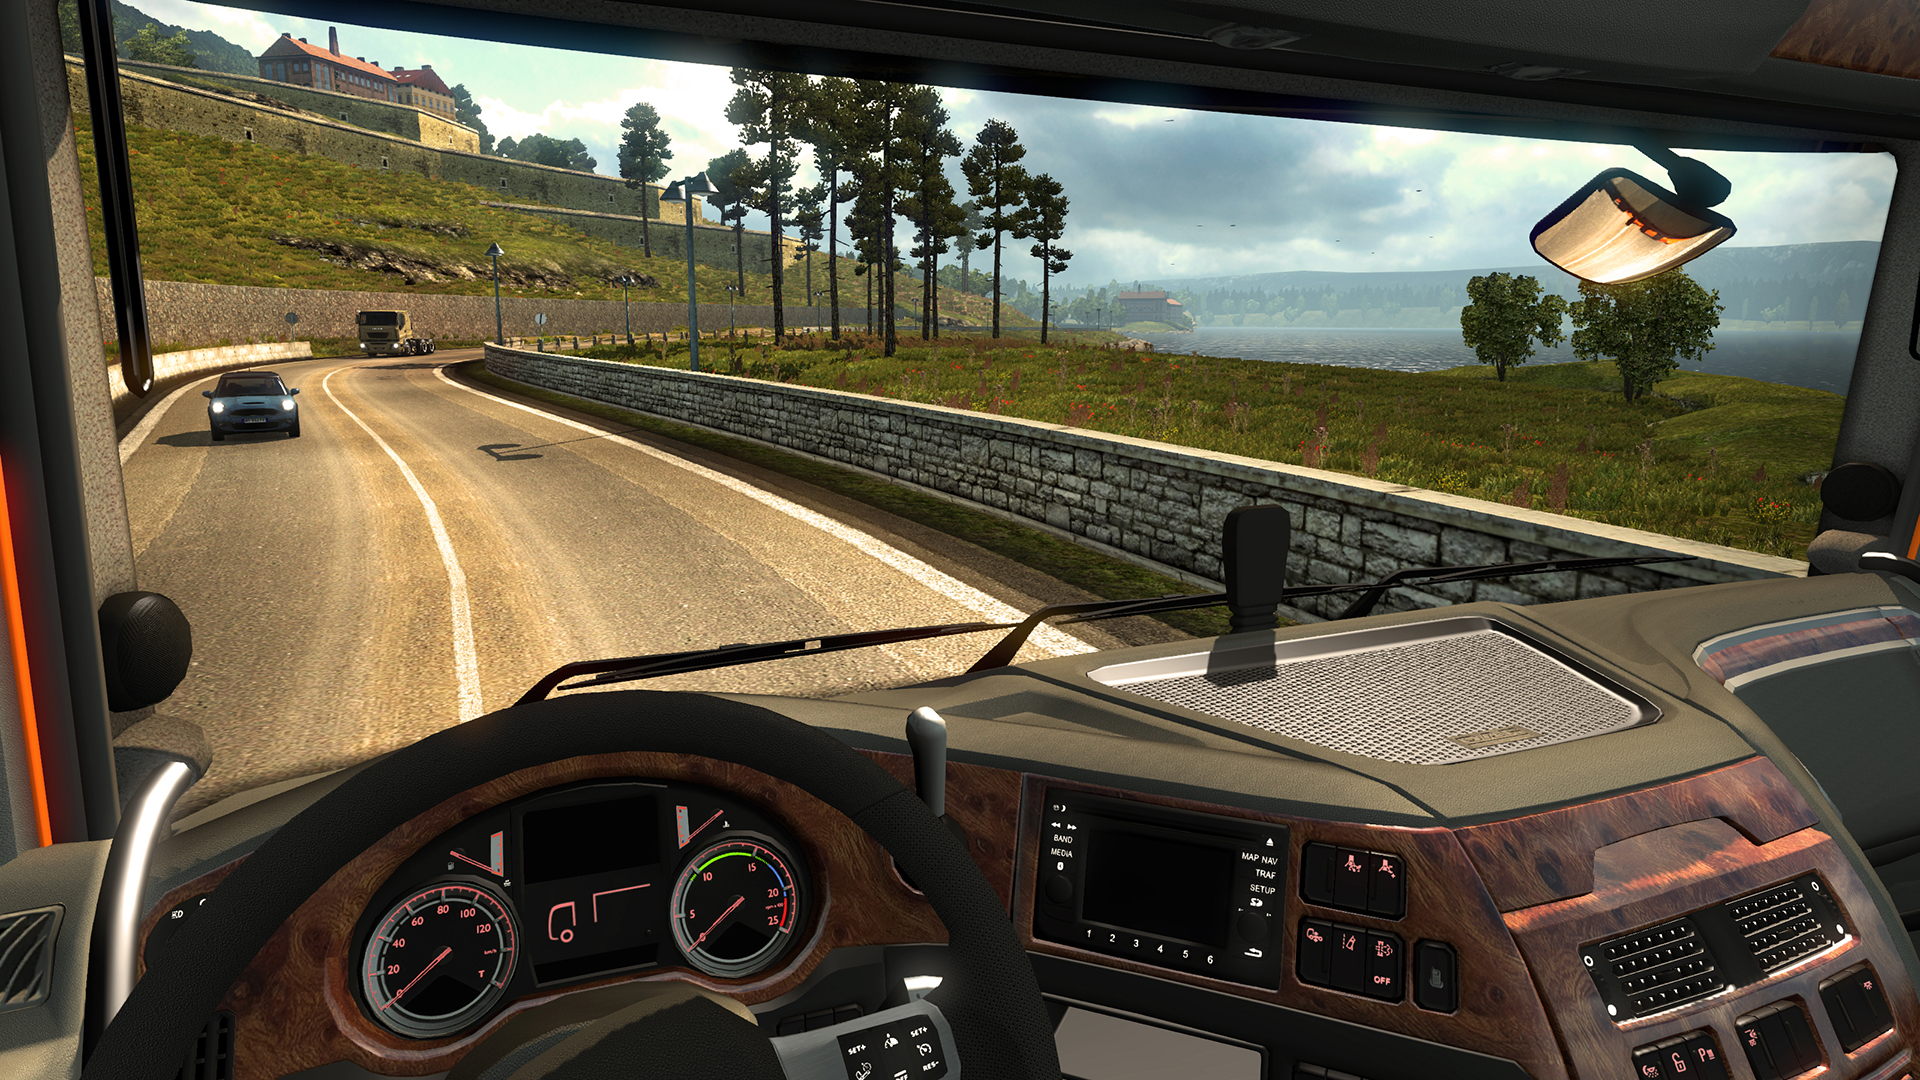 truck simulator 2 download free